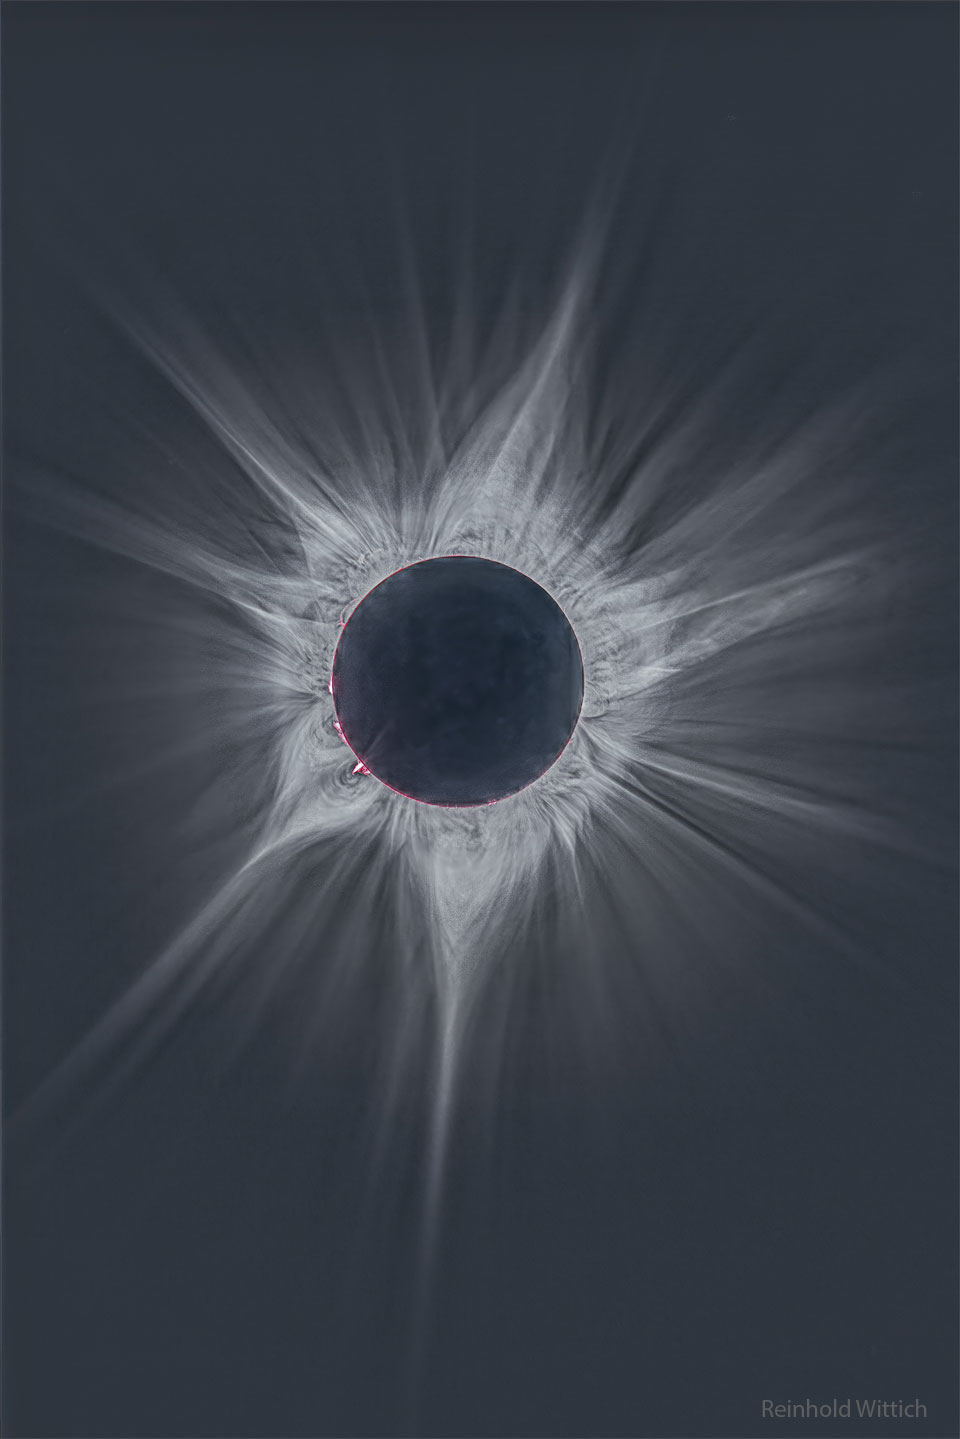 Der dunkle Neumond bedeckt die Sonne und ist von hellen Strahlen der Sonnenkorona umgeben. Über den Rand ragen zarte rosarote Protuberanzen.